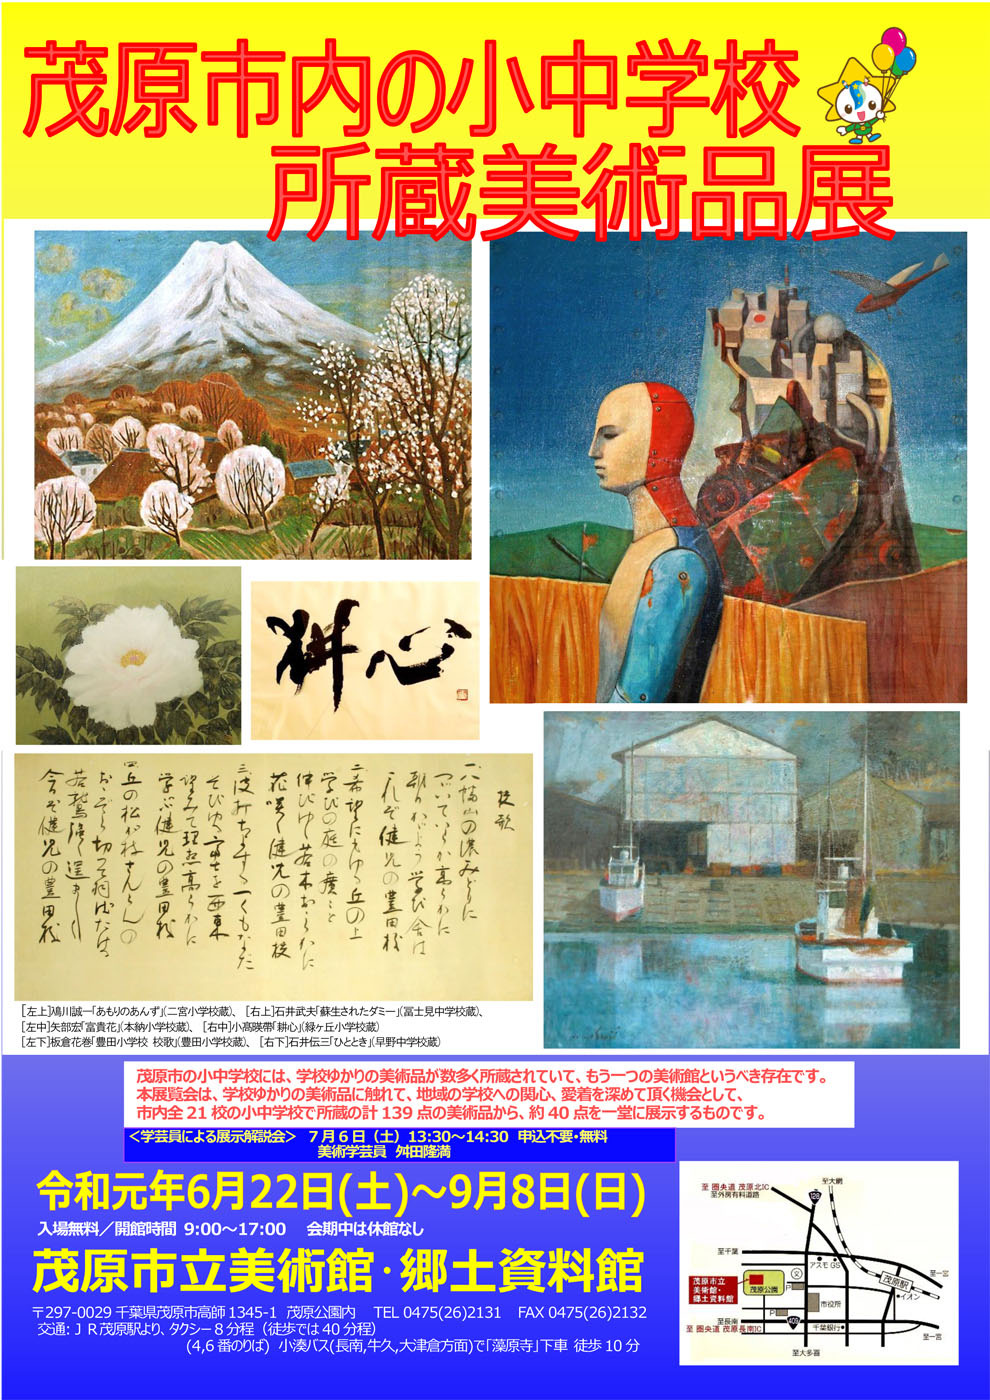 展覧会ポスター画像です。鳰川誠一の「あもりのあんず」では、長野県安茂里の花咲く農村を描いています。石井武夫「蘇生されたダミー」では、戦後の日本の復興をダミーをよみがえらせることで表現しています。